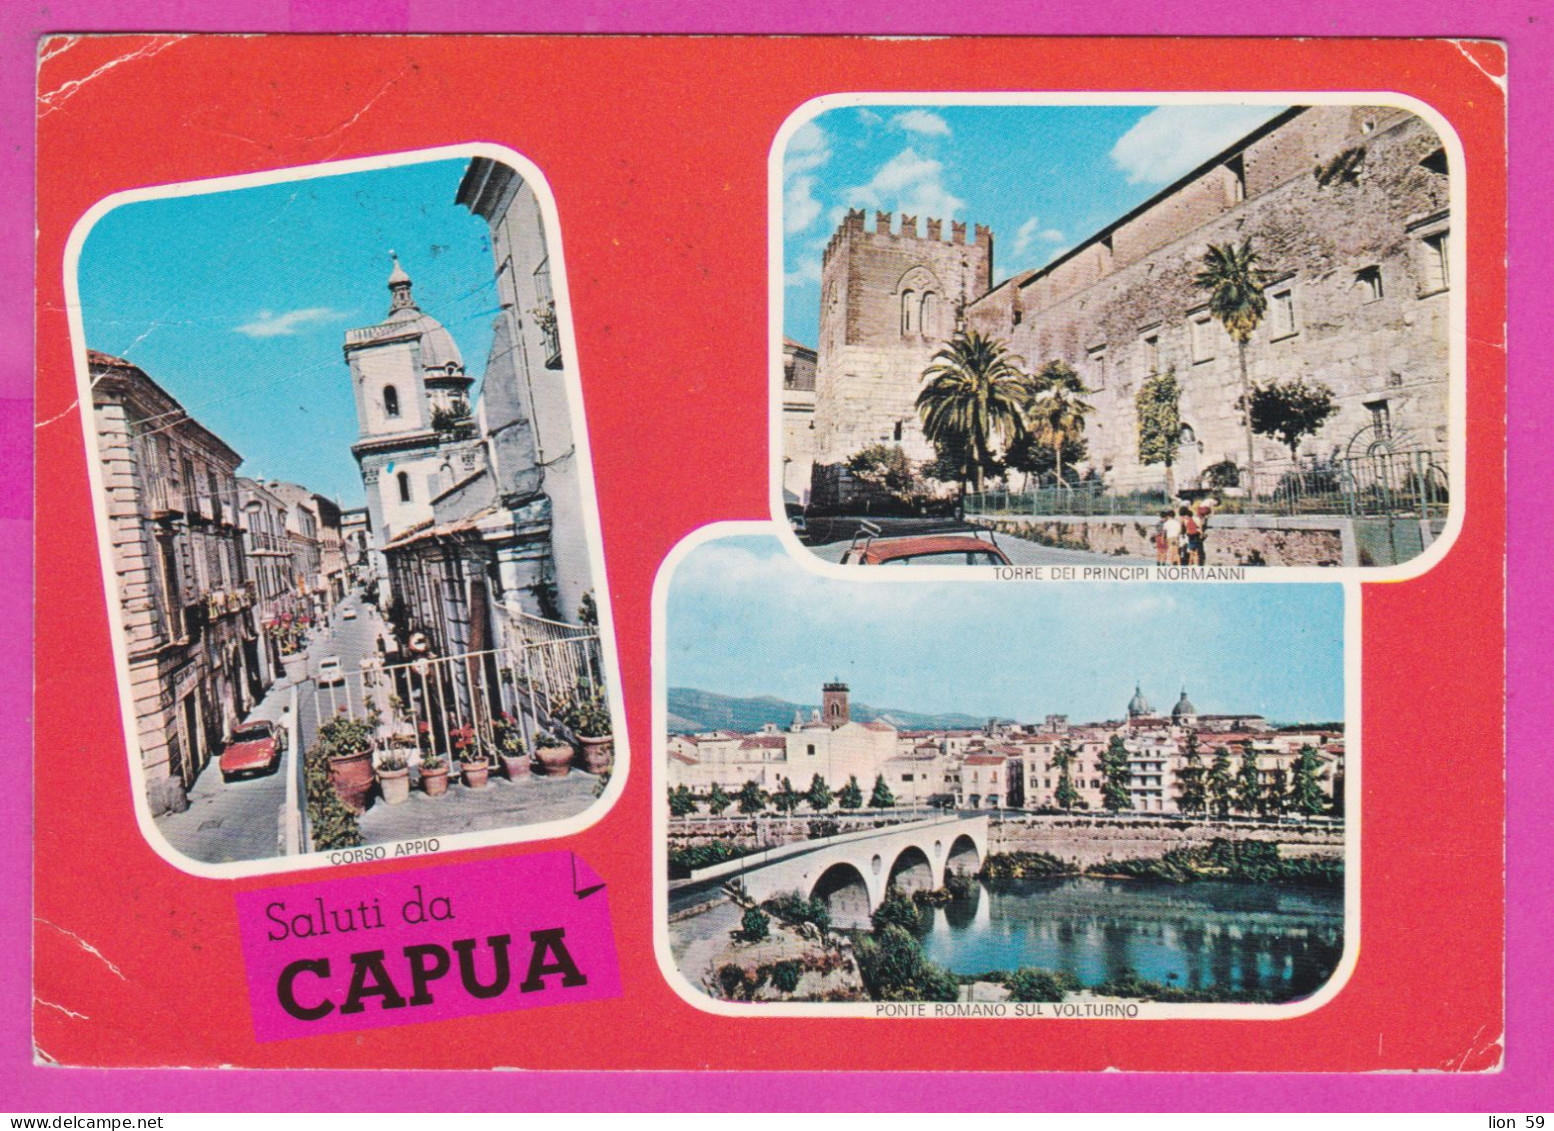 293957 / Italy - Saluti Da CAPUA 3 View Bridge Castle PC 1972 USED  40+50 L Coin Of Syracuse , Italia Italie Italien - 1971-80: Poststempel